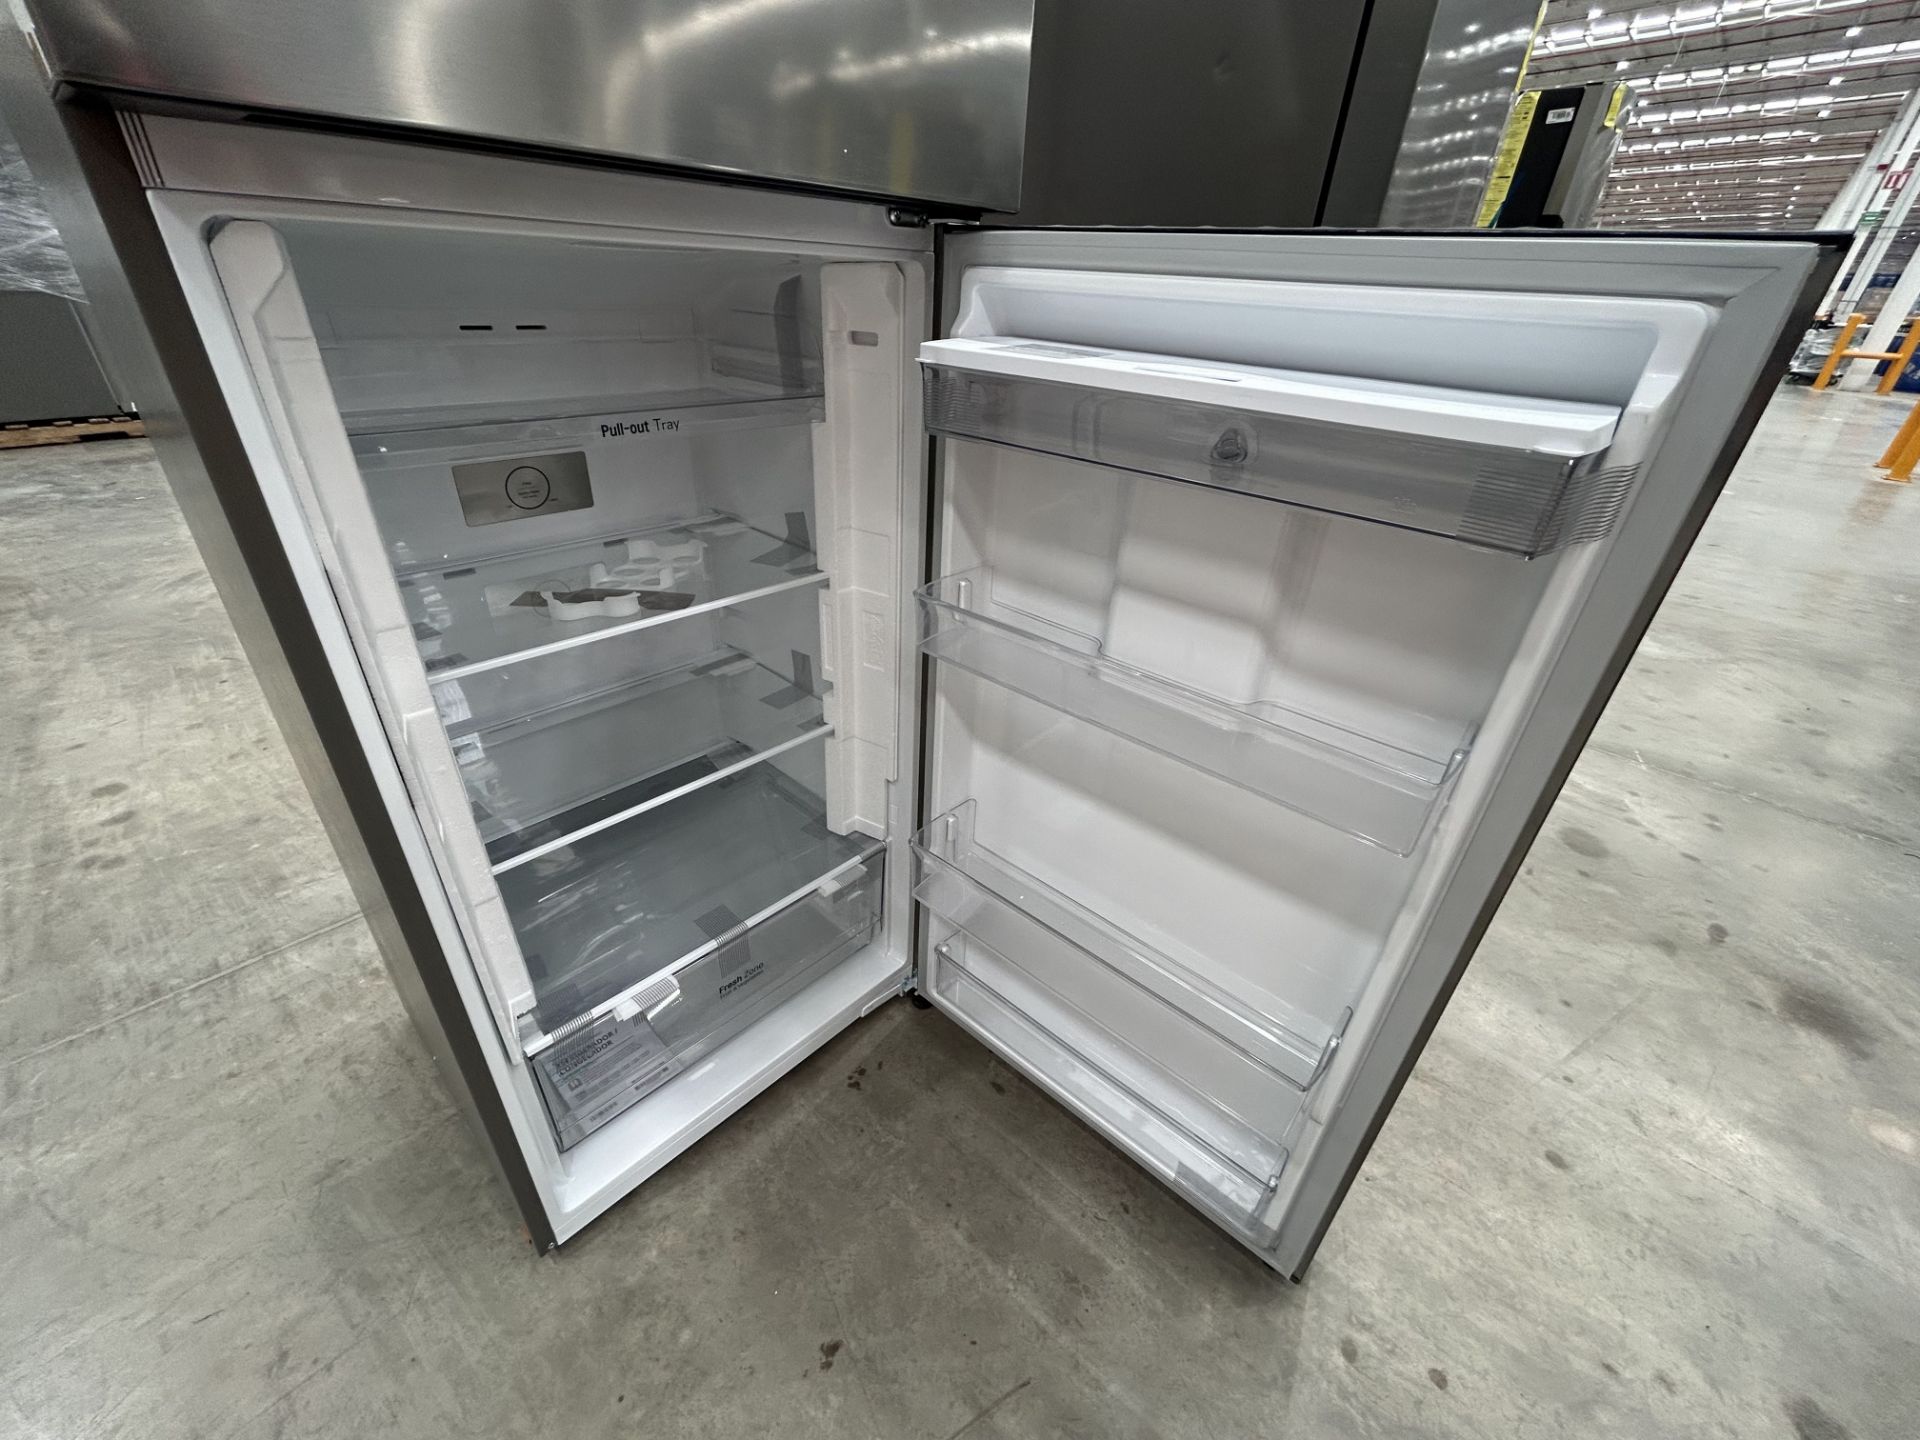 1 refrigerador con dispensador de agua Marca LG, Modelo VT40WP, Serie 2X898, Color GRIS (No se aseg - Image 4 of 7